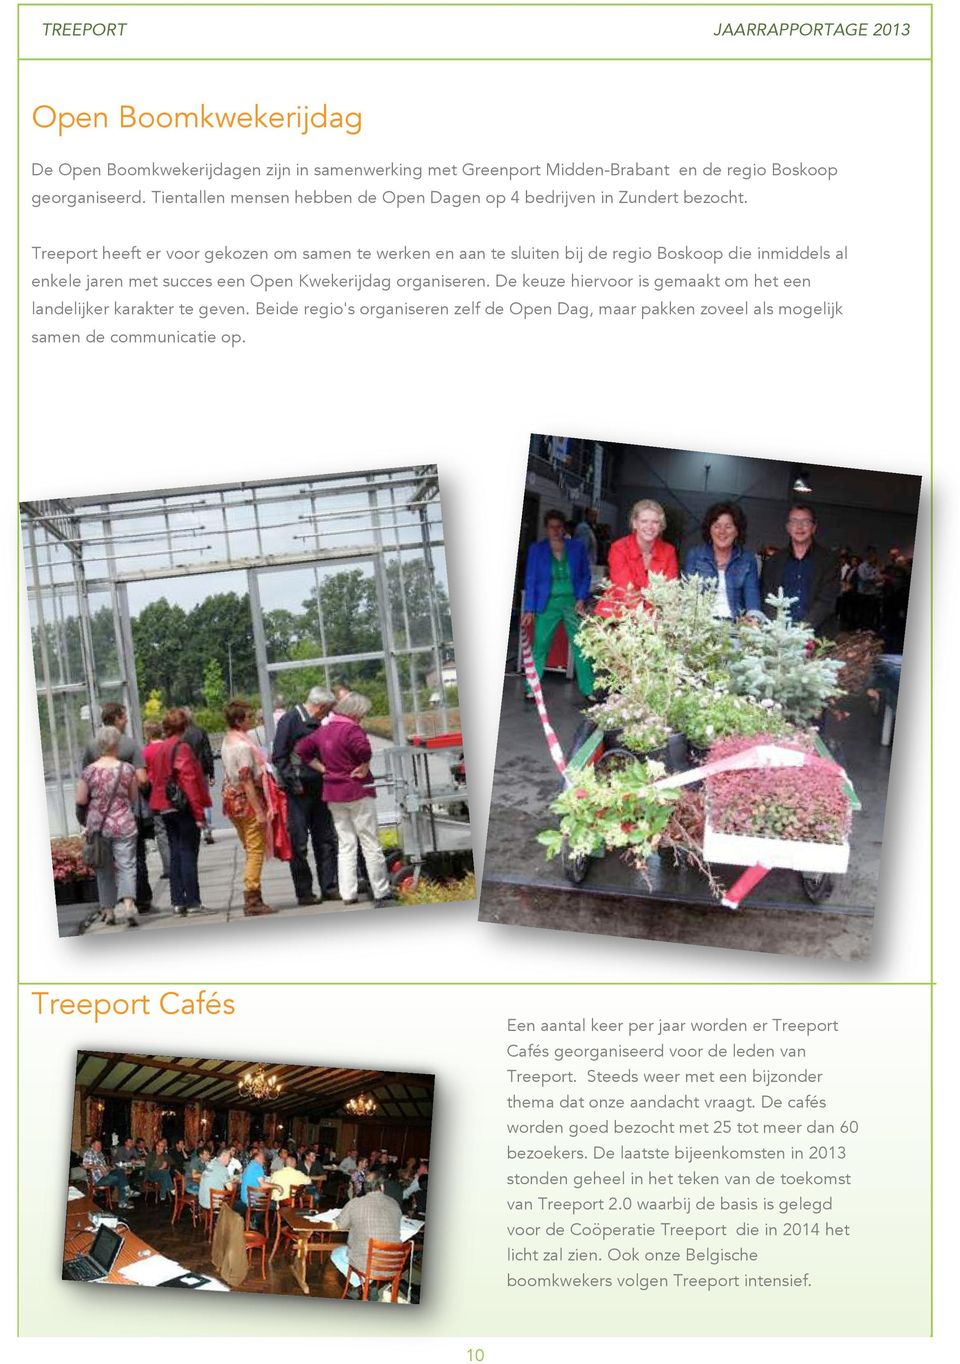 Treeport heeft er voor gekozen om samen te werken en aan te sluiten bij de regio Boskoop die inmiddels al enkele jaren met succes een Open Kwekerijdag organiseren.